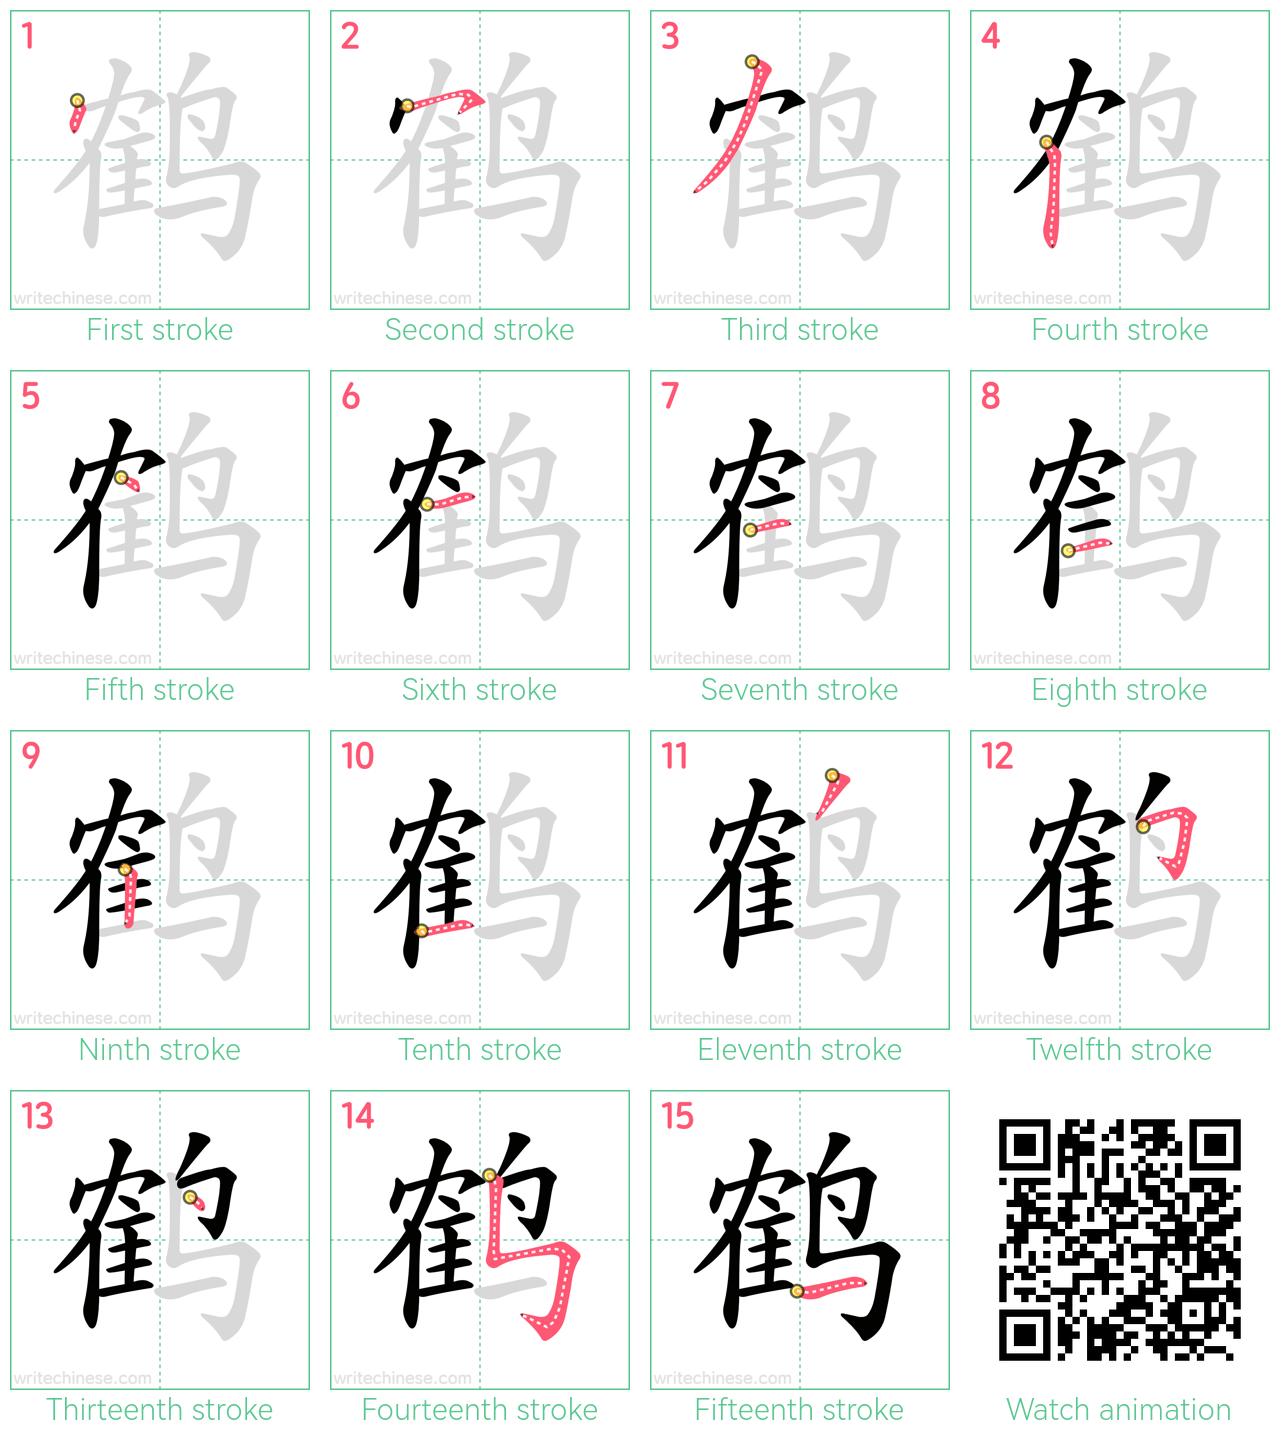 鹤 step-by-step stroke order diagrams